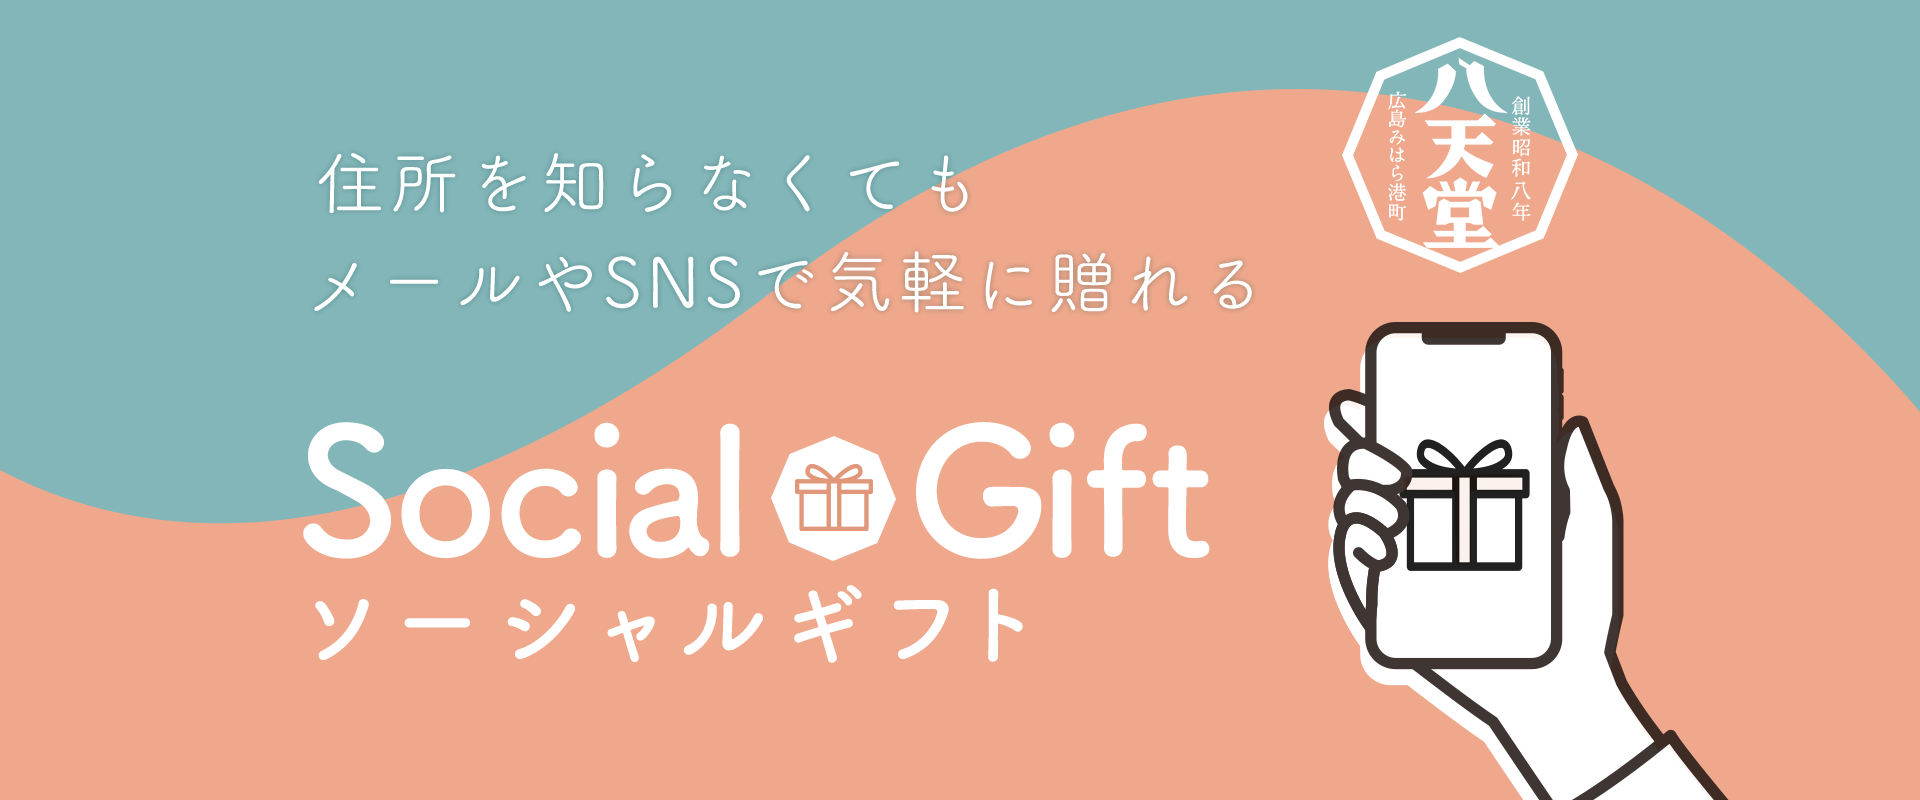 Social Gift ソーシャルギフト